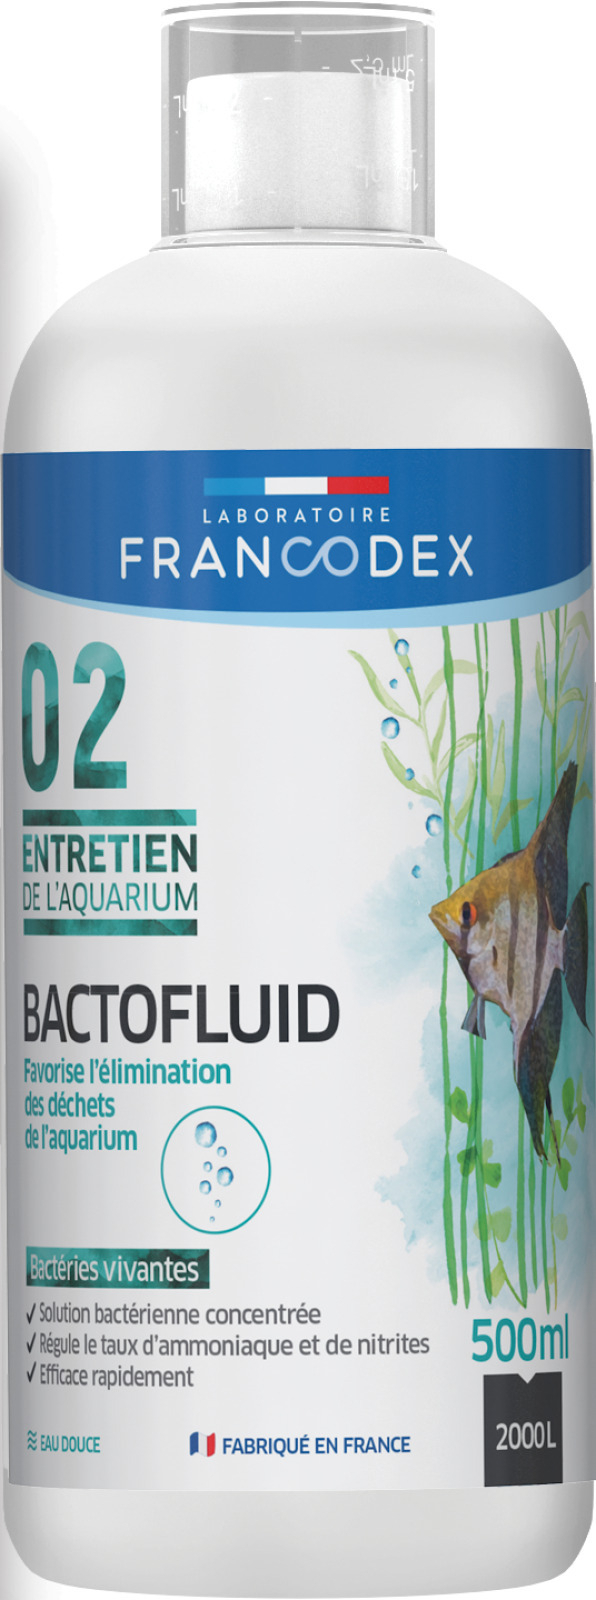 Bactofluid mantenimiento del acuario FRANCODEX